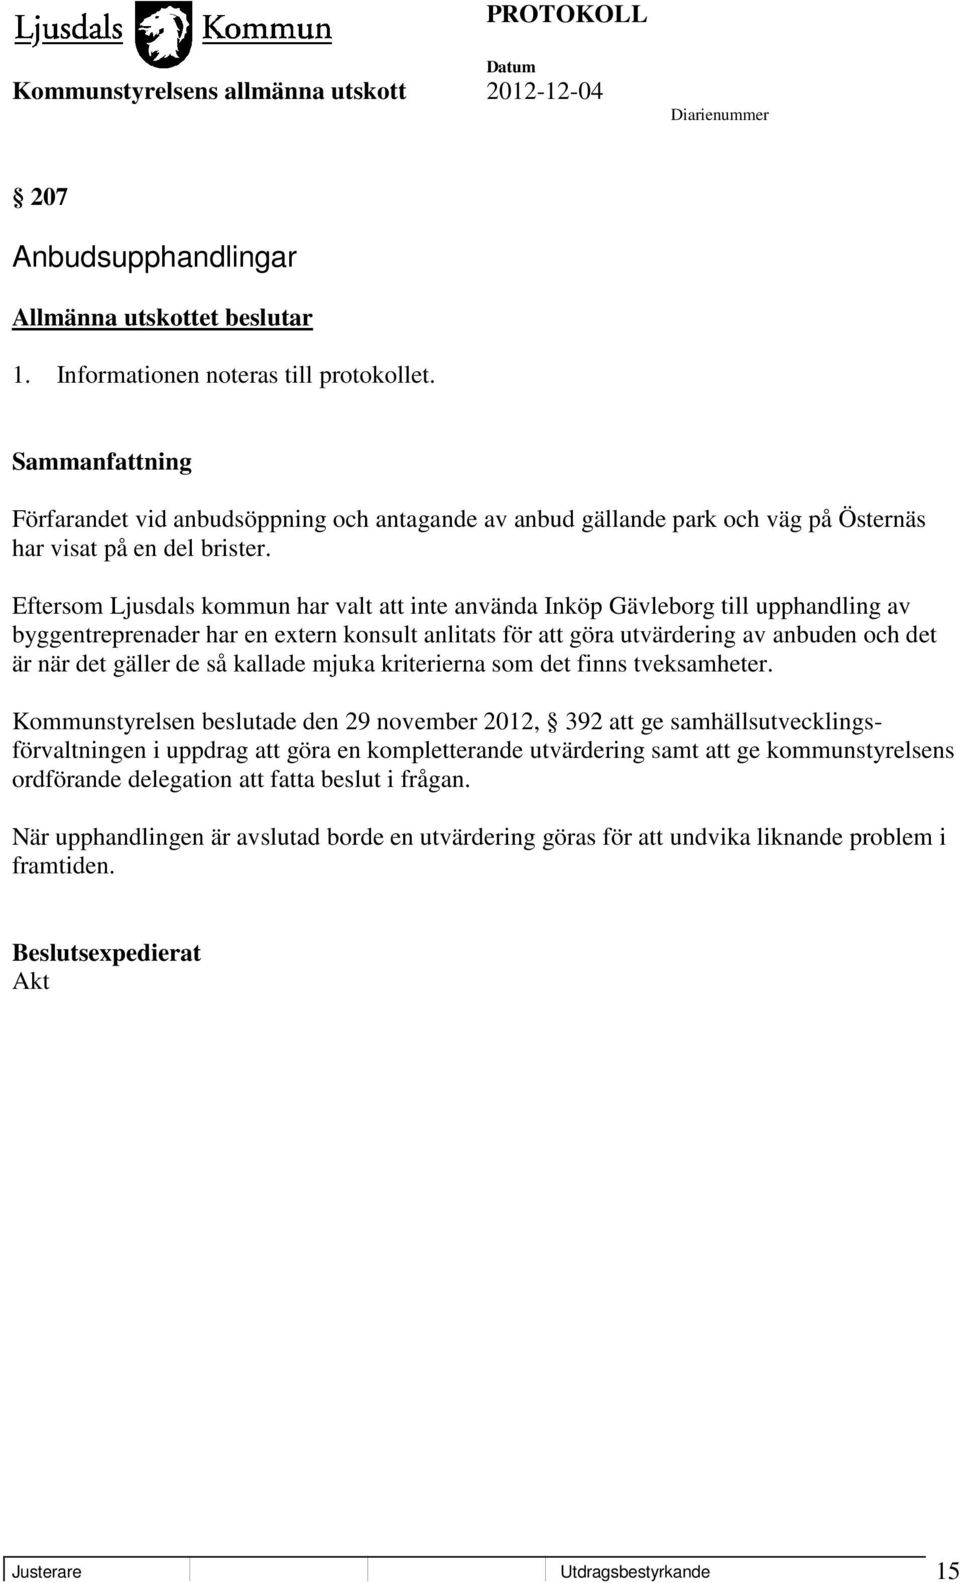 Eftersom Ljusdals kommun har valt att inte använda Inköp Gävleborg till upphandling av byggentreprenader har en extern konsult anlitats för att göra utvärdering av anbuden och det är när det gäller